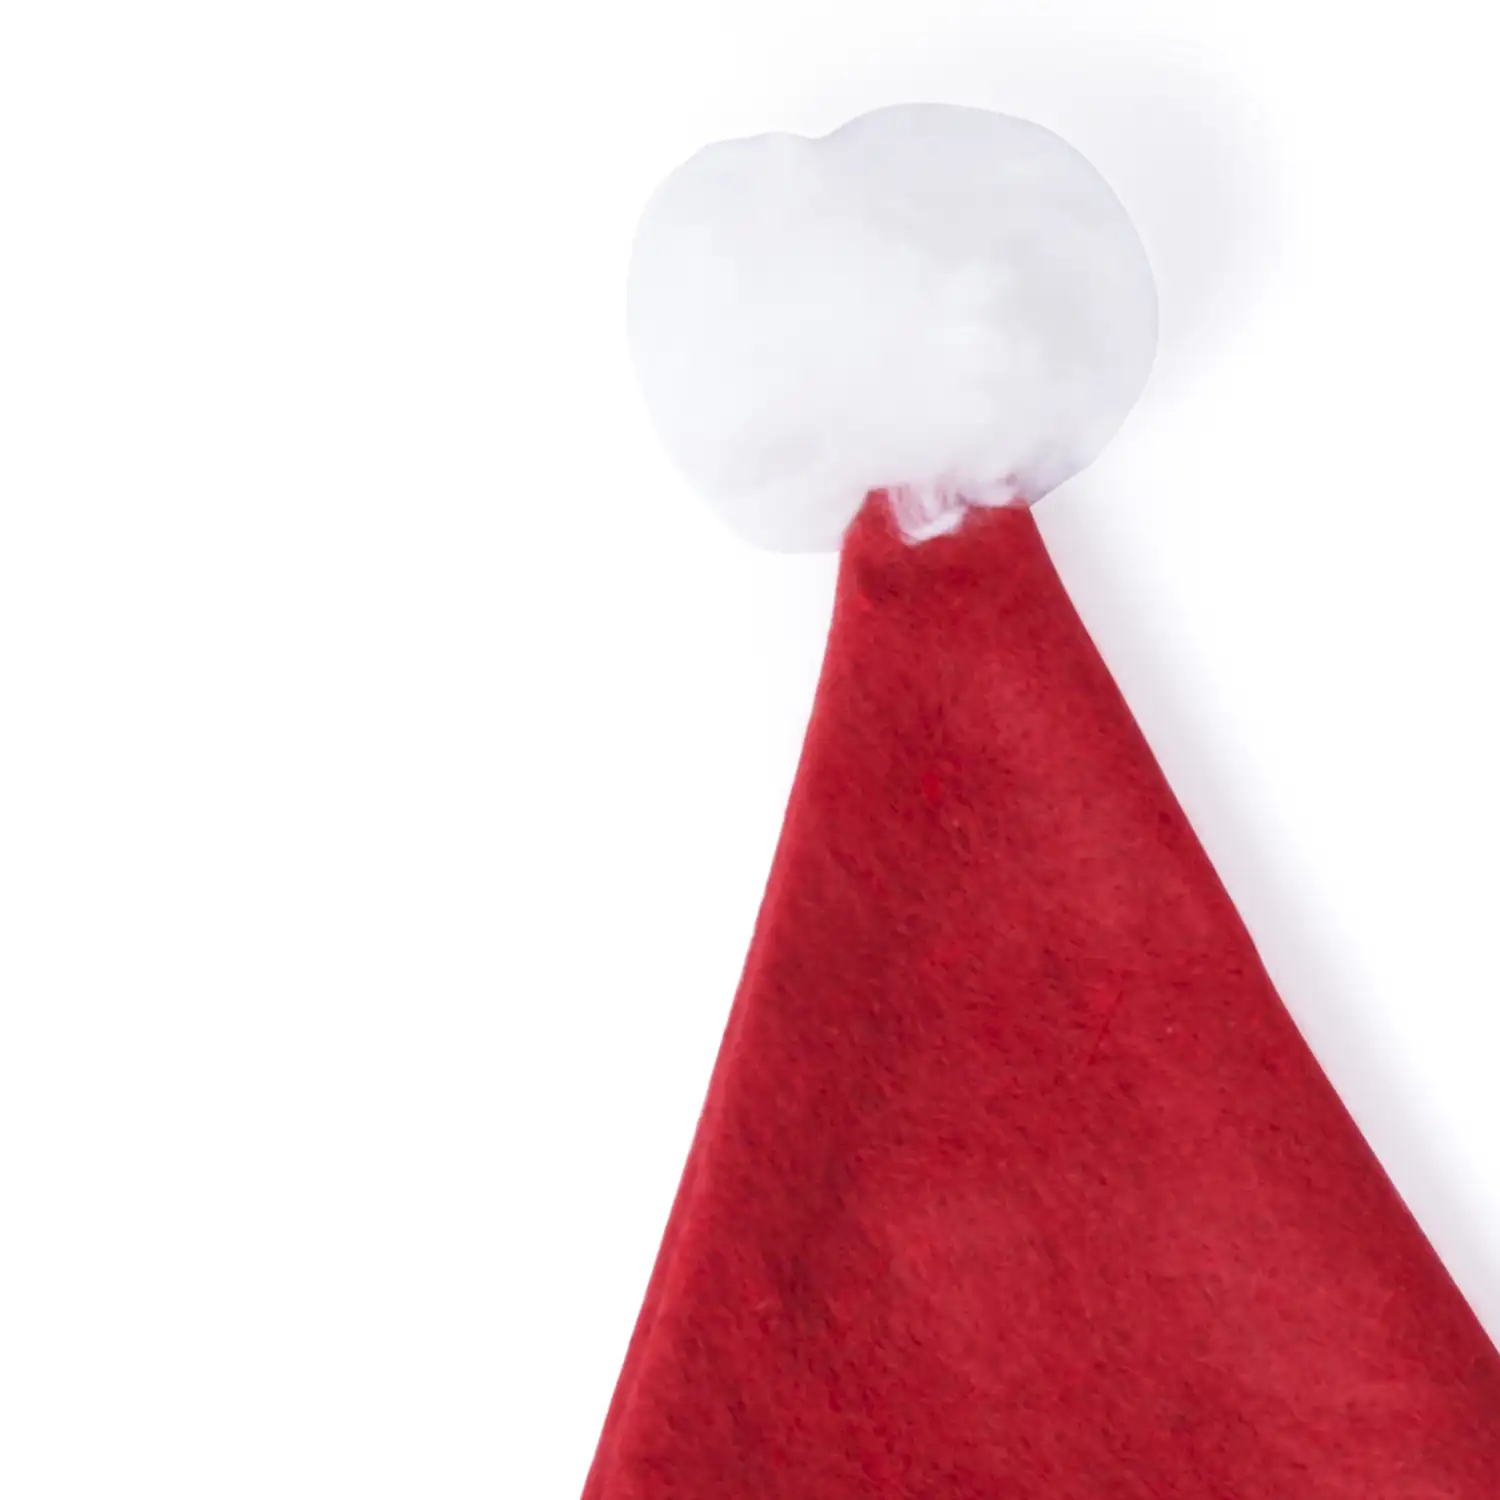 RUPLER Gorro de Papá Noel para niño. Tira frontal para decorar, incluye 5 ceras.